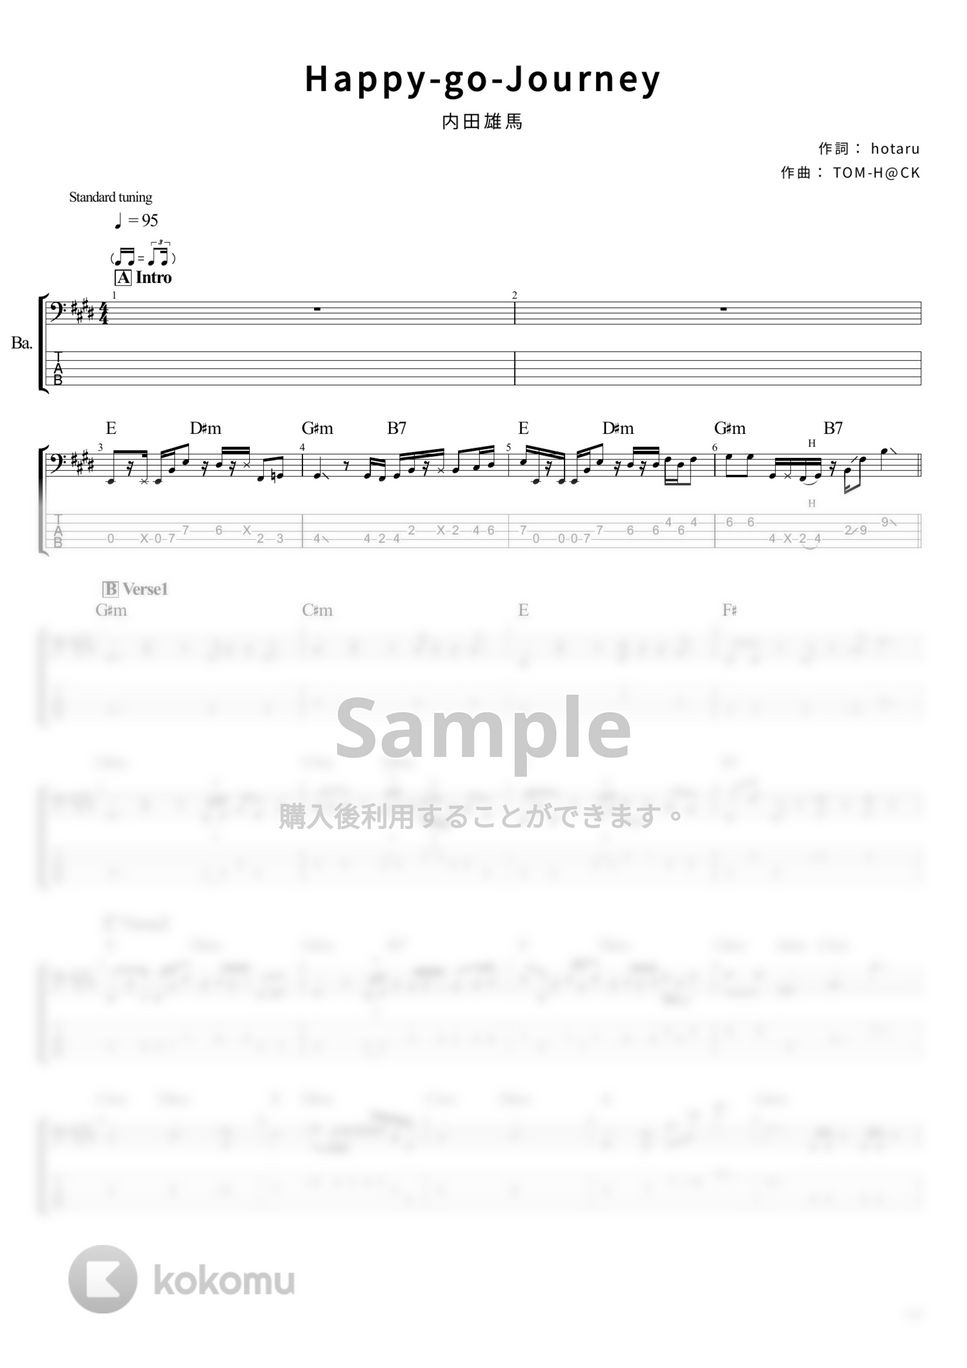 内田雄馬 - Happy-go-Journey (ベース Tab譜 5弦) by T's bass score